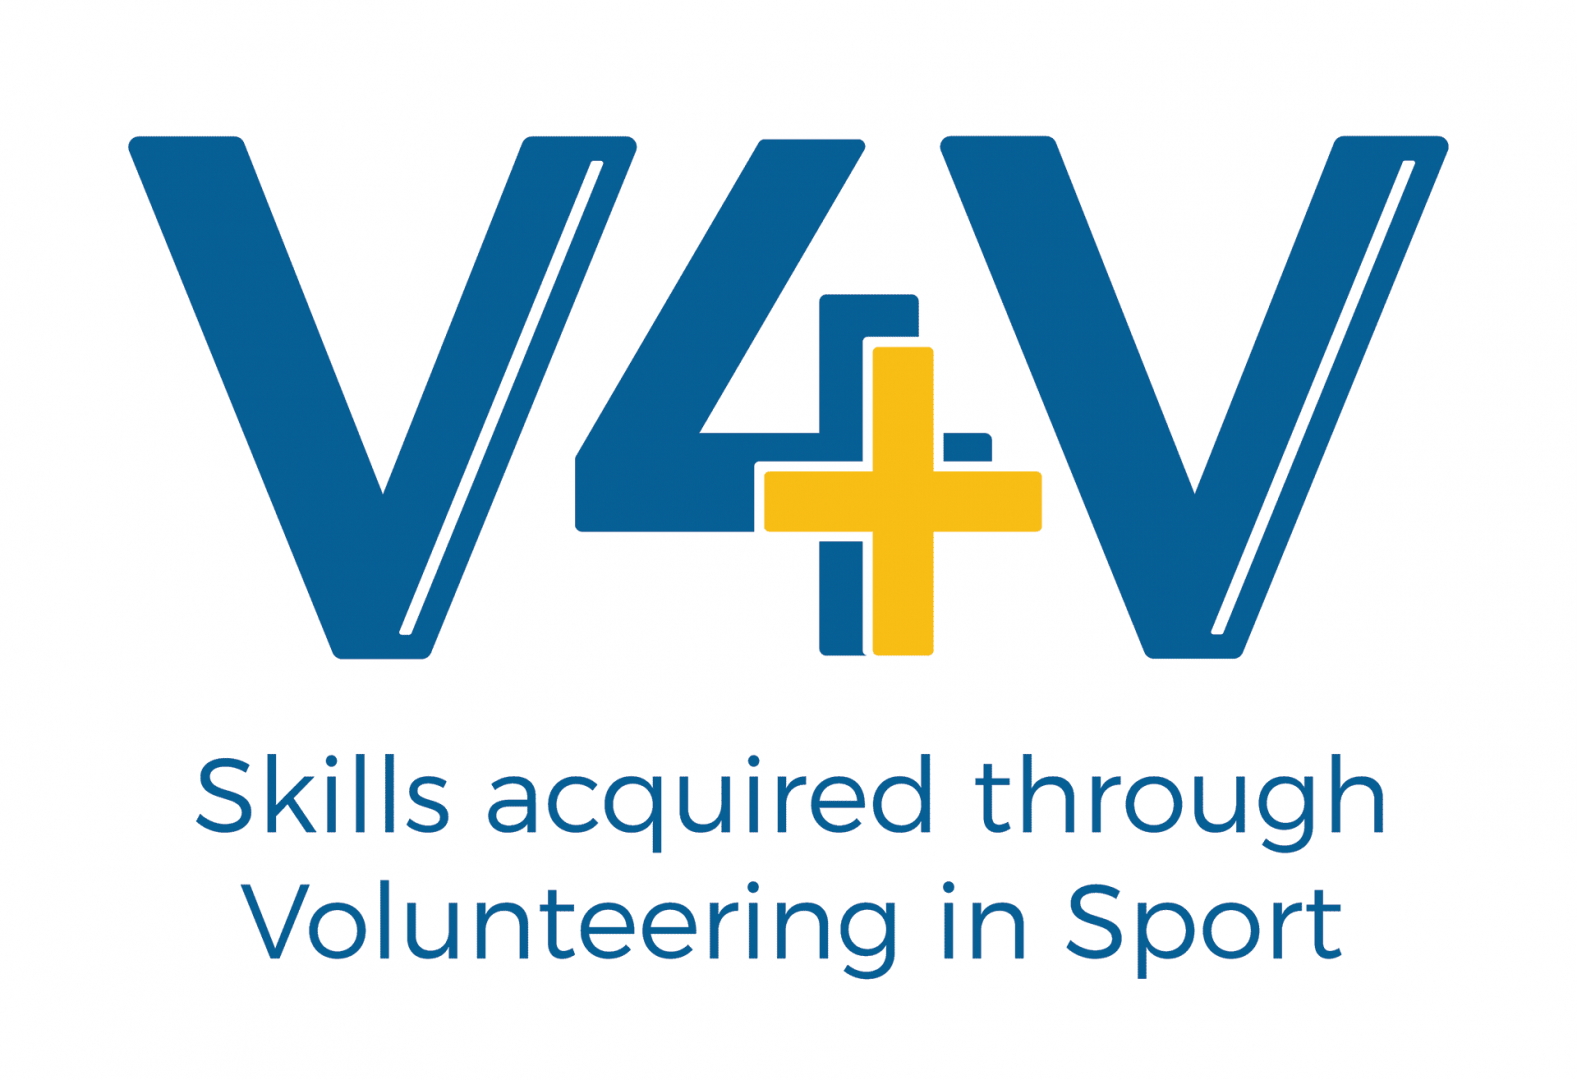 Európai kutatás az önkéntességről a TF főszereplésével (V4V logo)